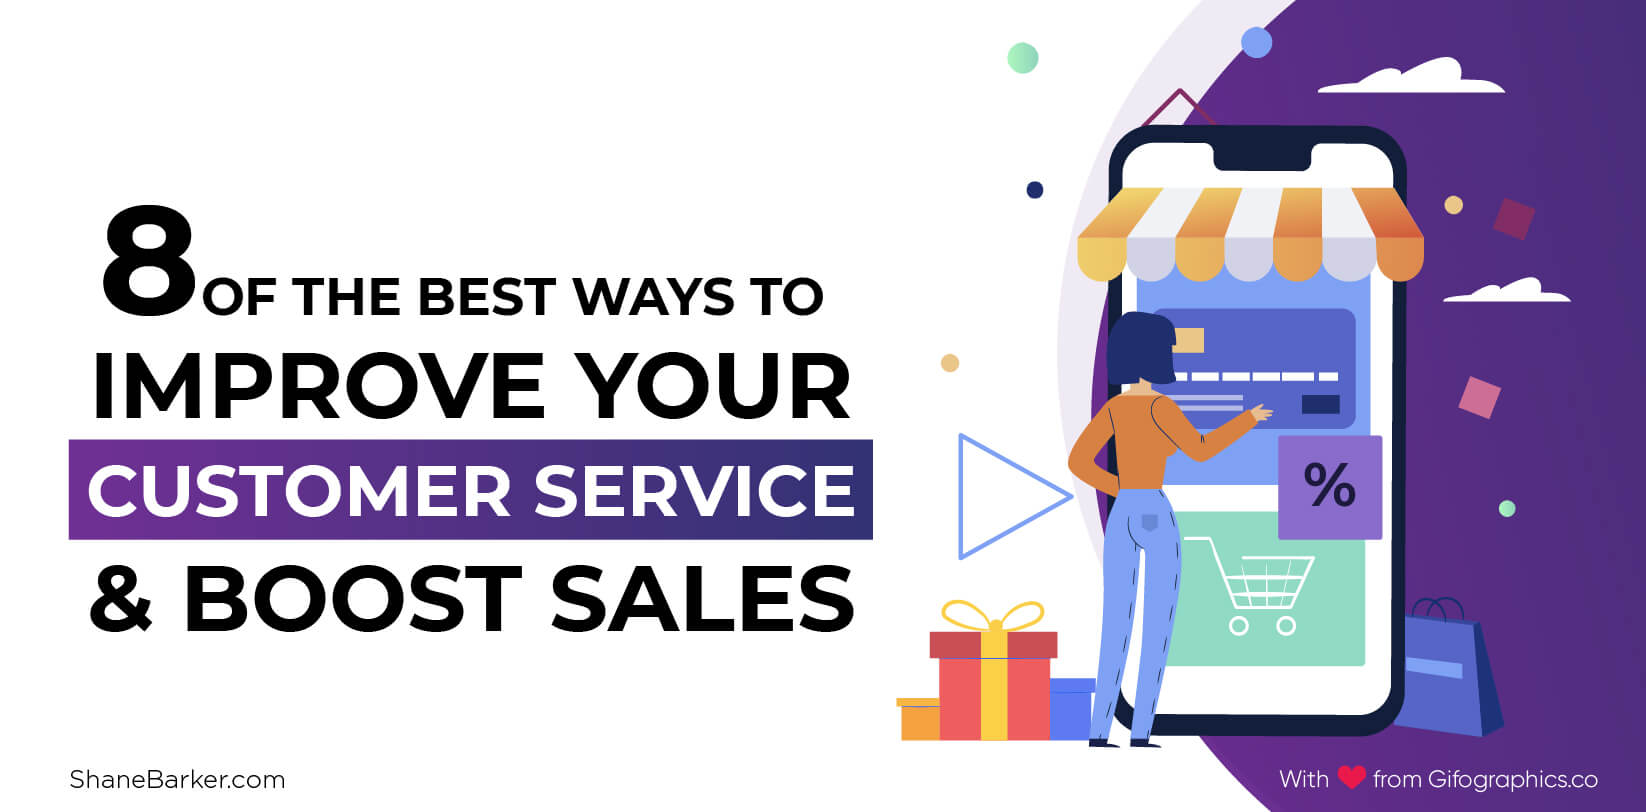 改善客戶服務和促進銷售的 8 種最佳方法（2019 年 9 月更新）